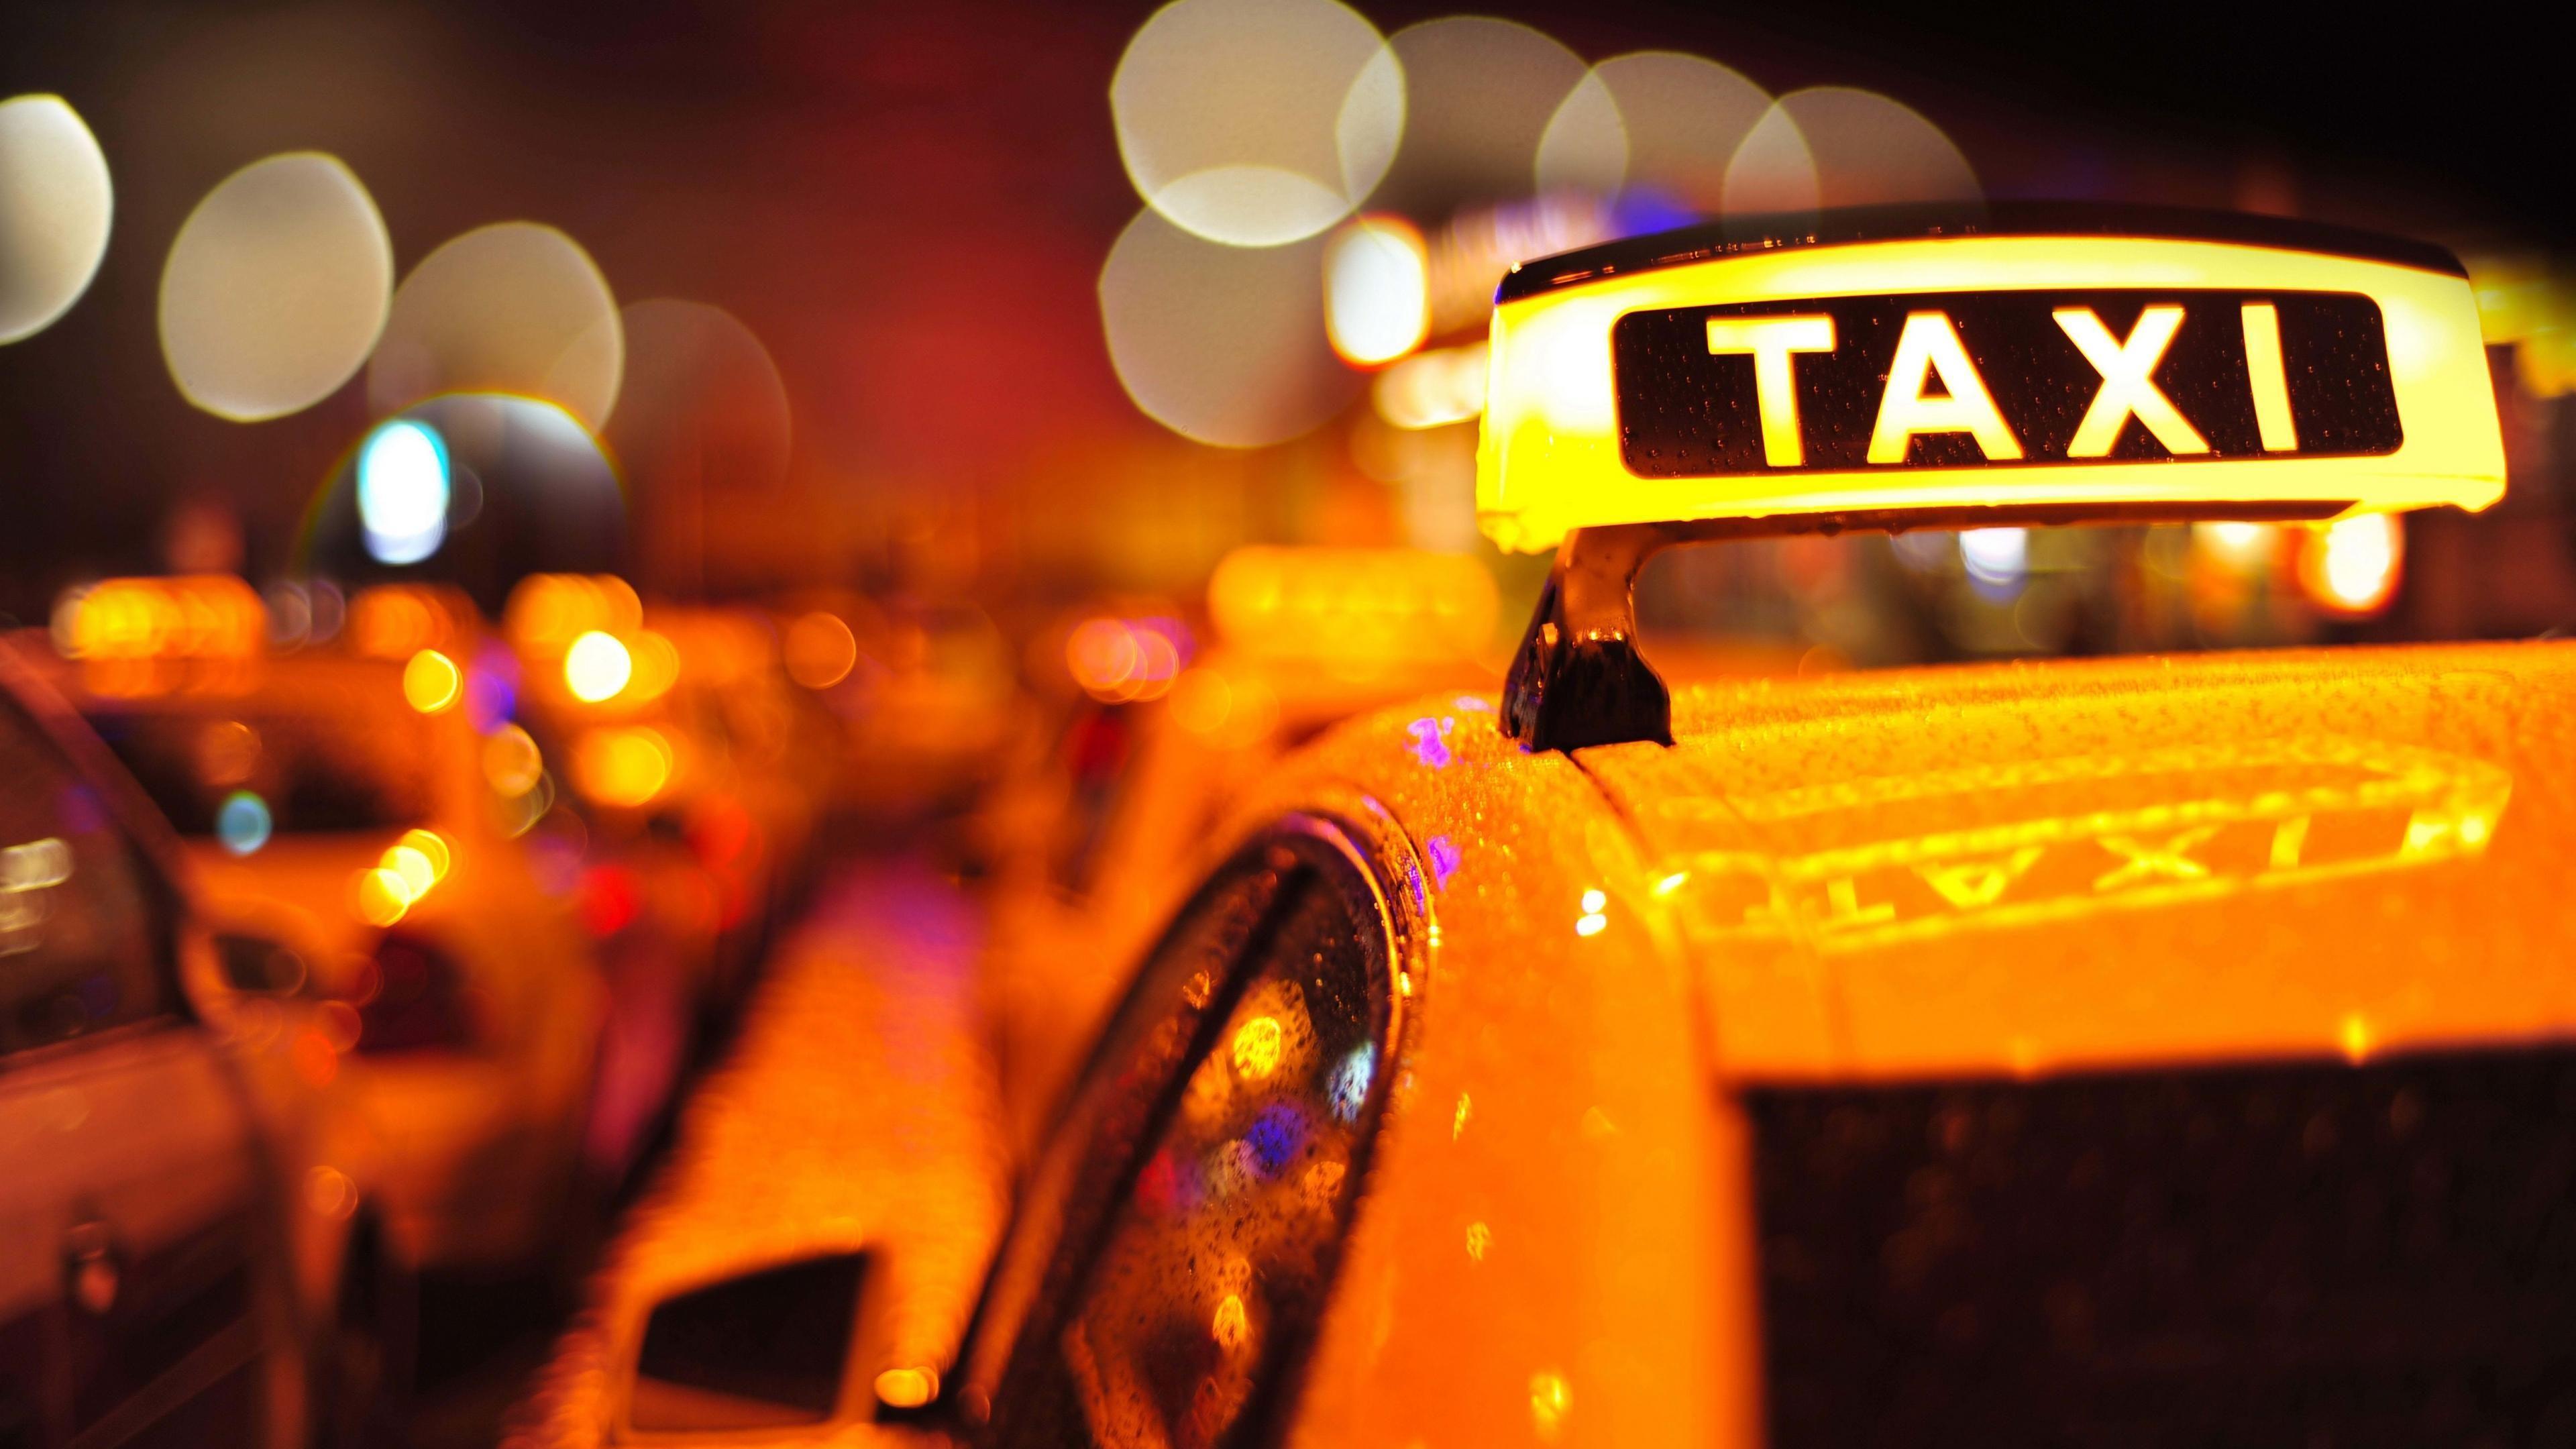 Taxi Wallpaper HD Download